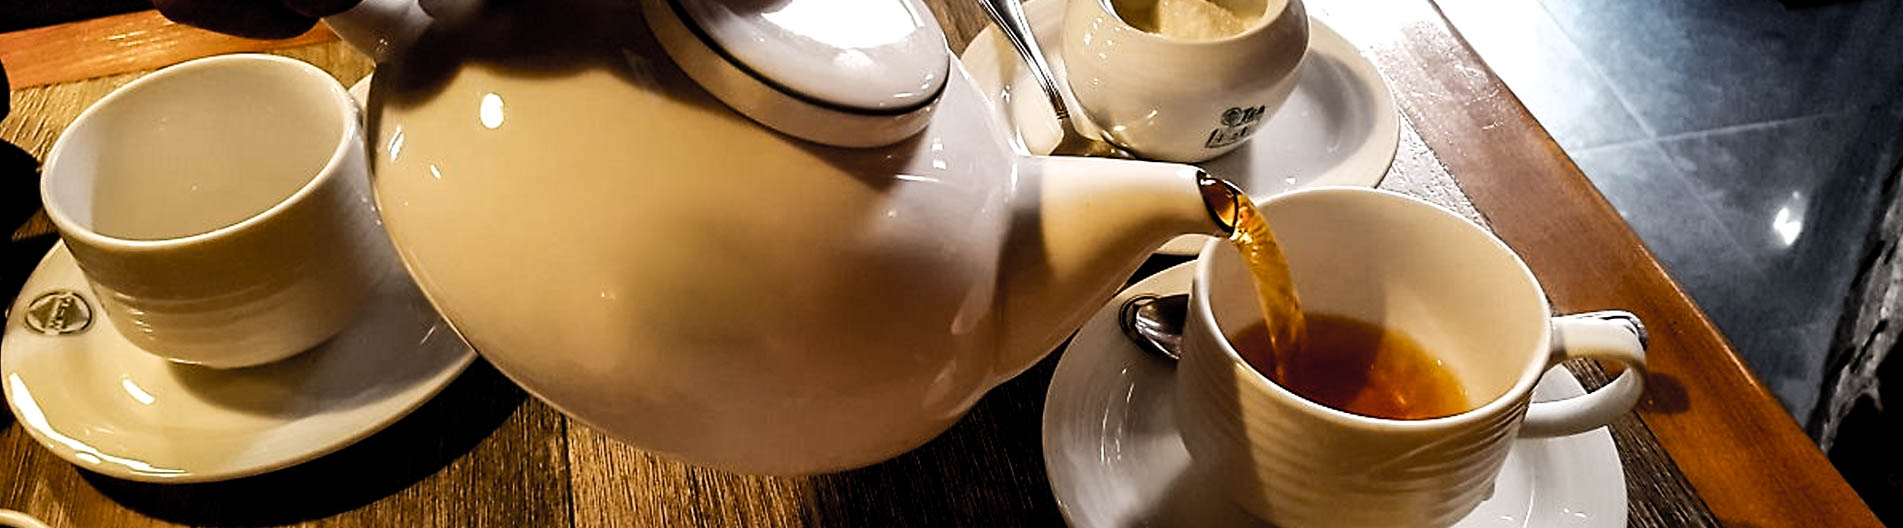 Ceylon tea - Golden tea tips